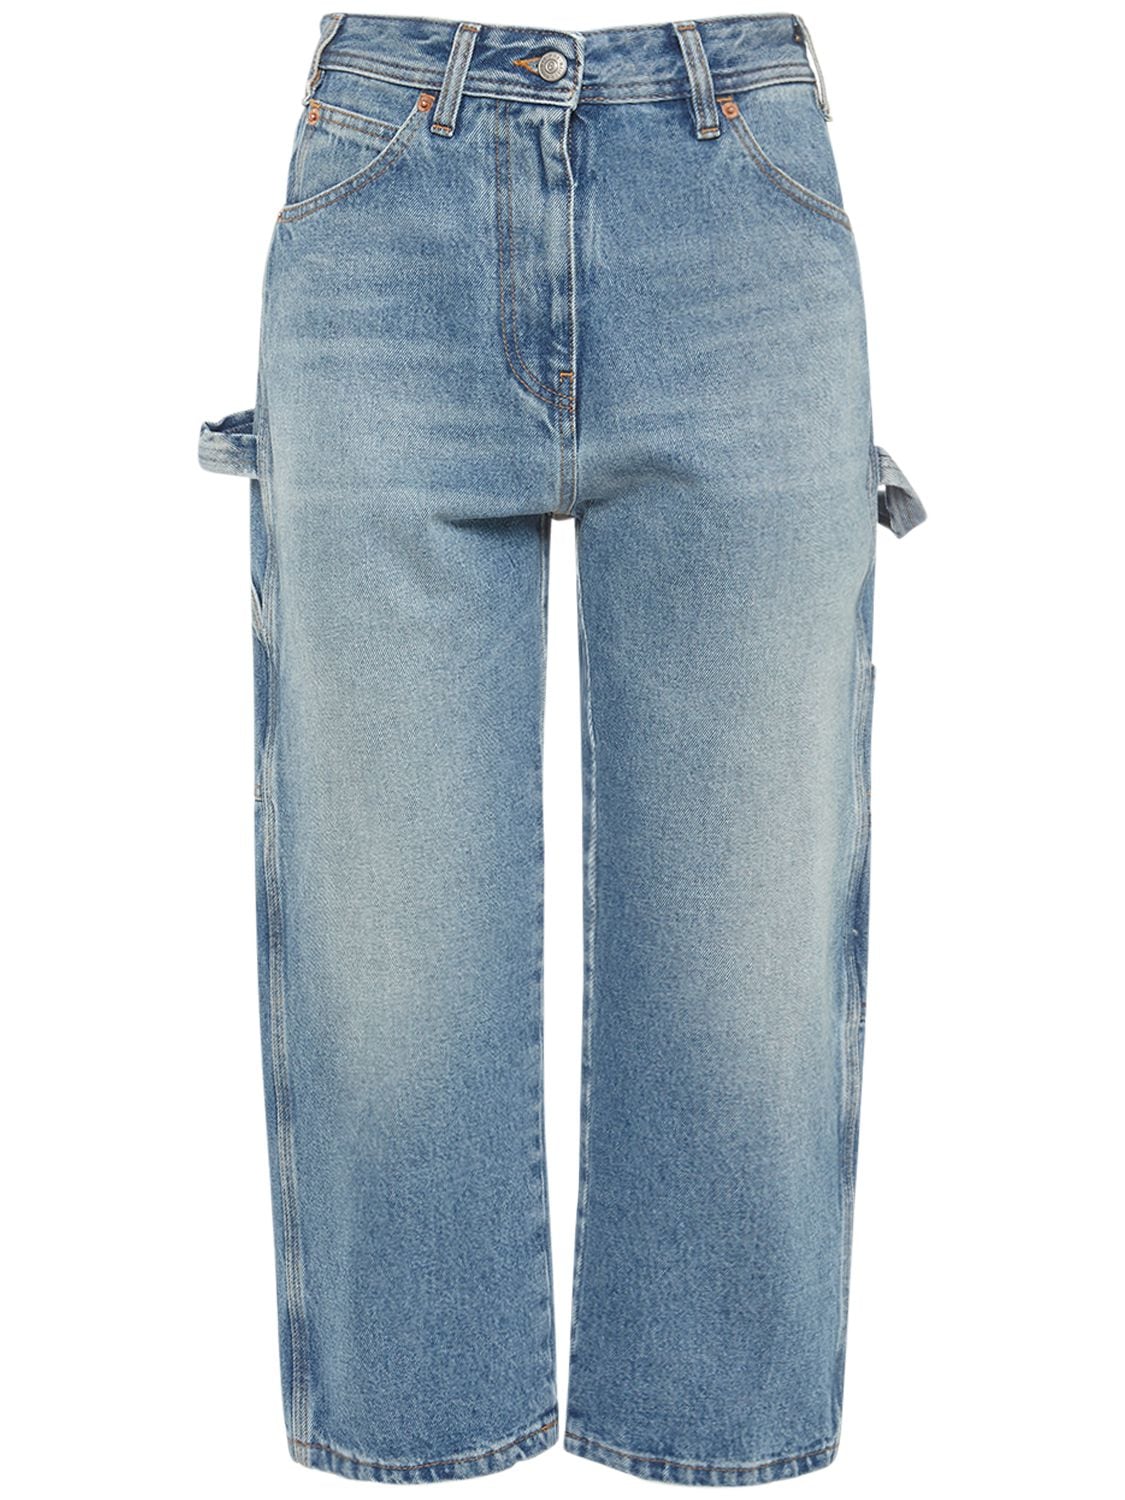 MM6 MAISON MARGIELA Mid Rise Cotton Denim Jeans